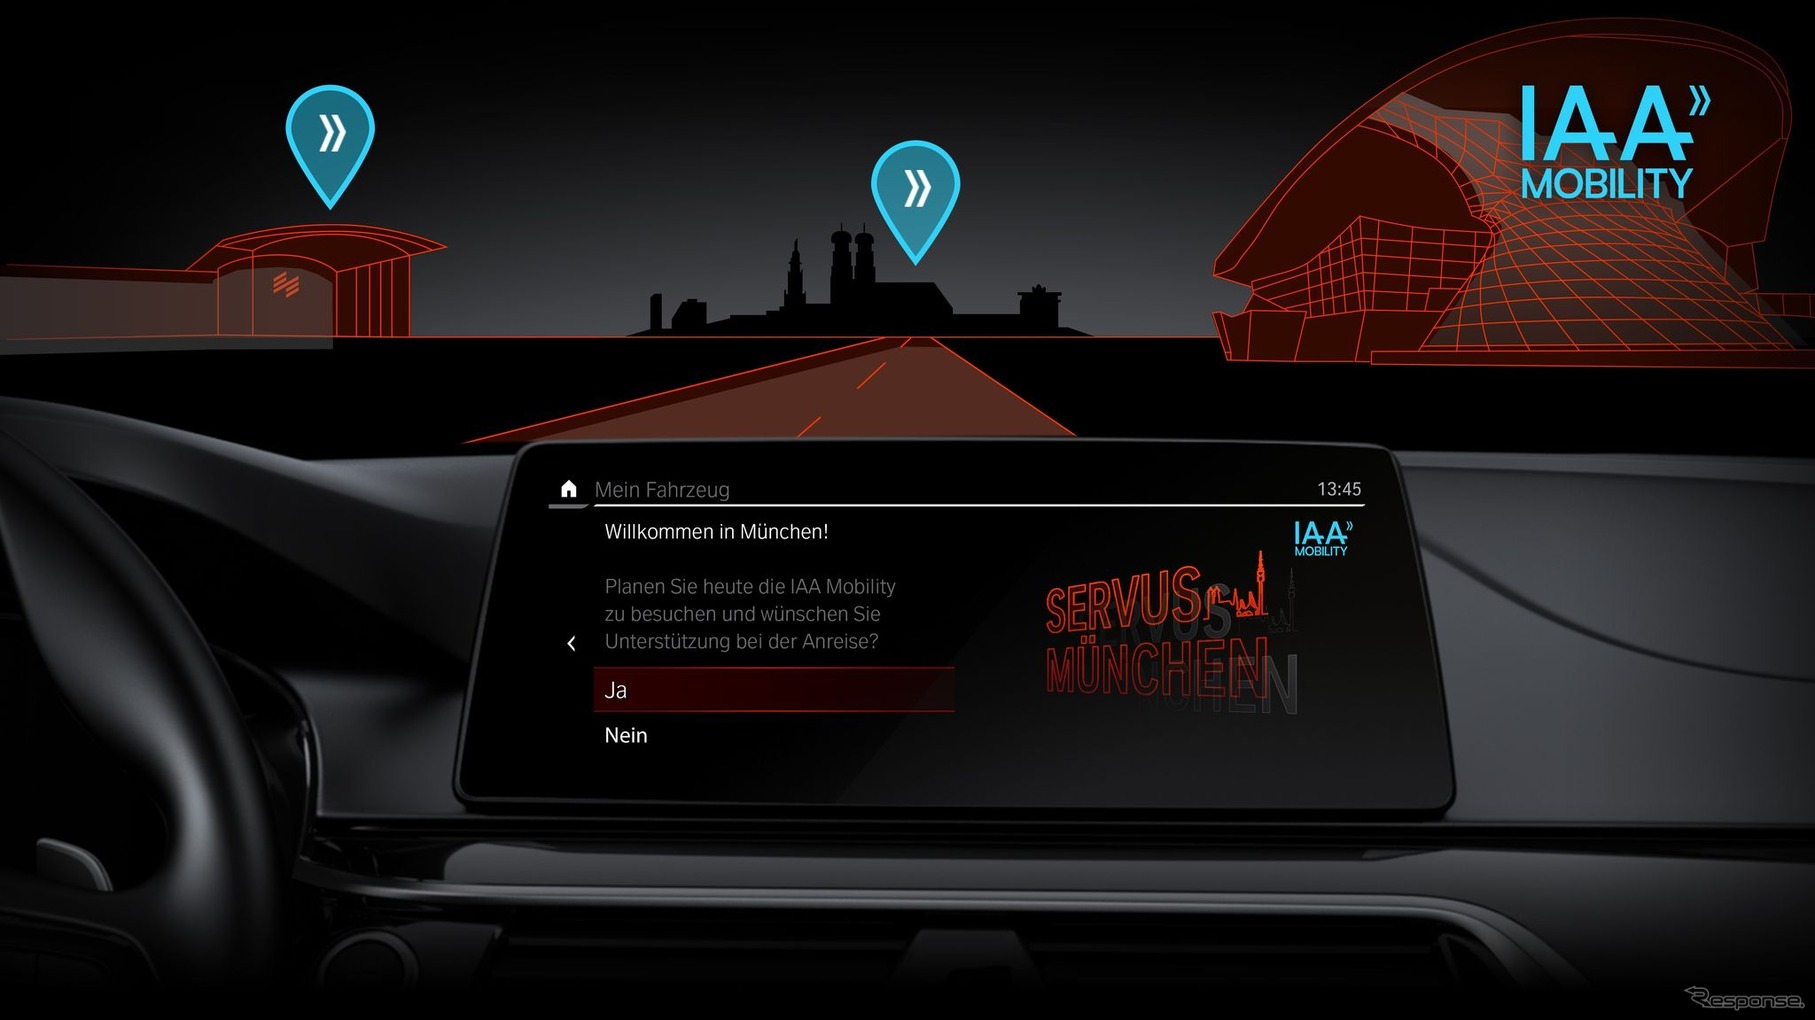 BMWグループが開発した車載アプリ「インターモーダルコンパニオン@ IAA MOBILITY」